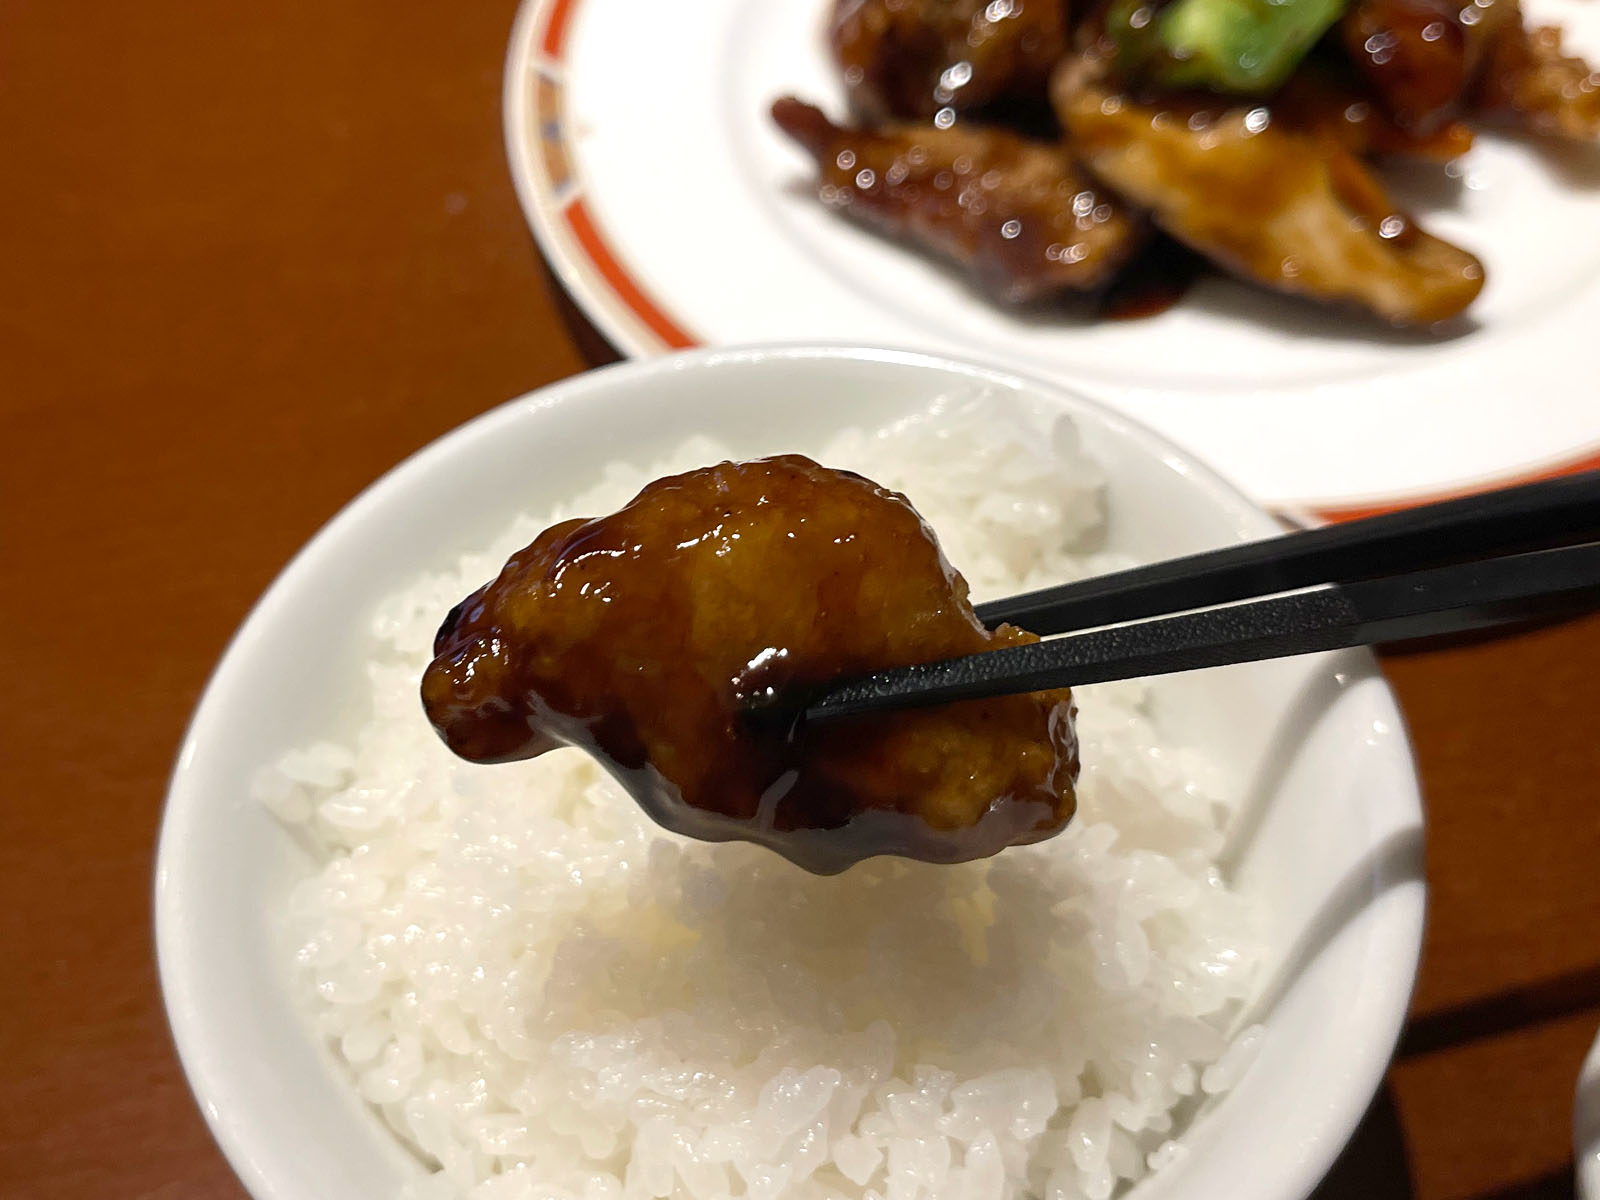 上海酒家 岳(ガク)のランチメニュー、黒酢酢豚と鶏のなす炒めを食べたよ／横浜・馬車道